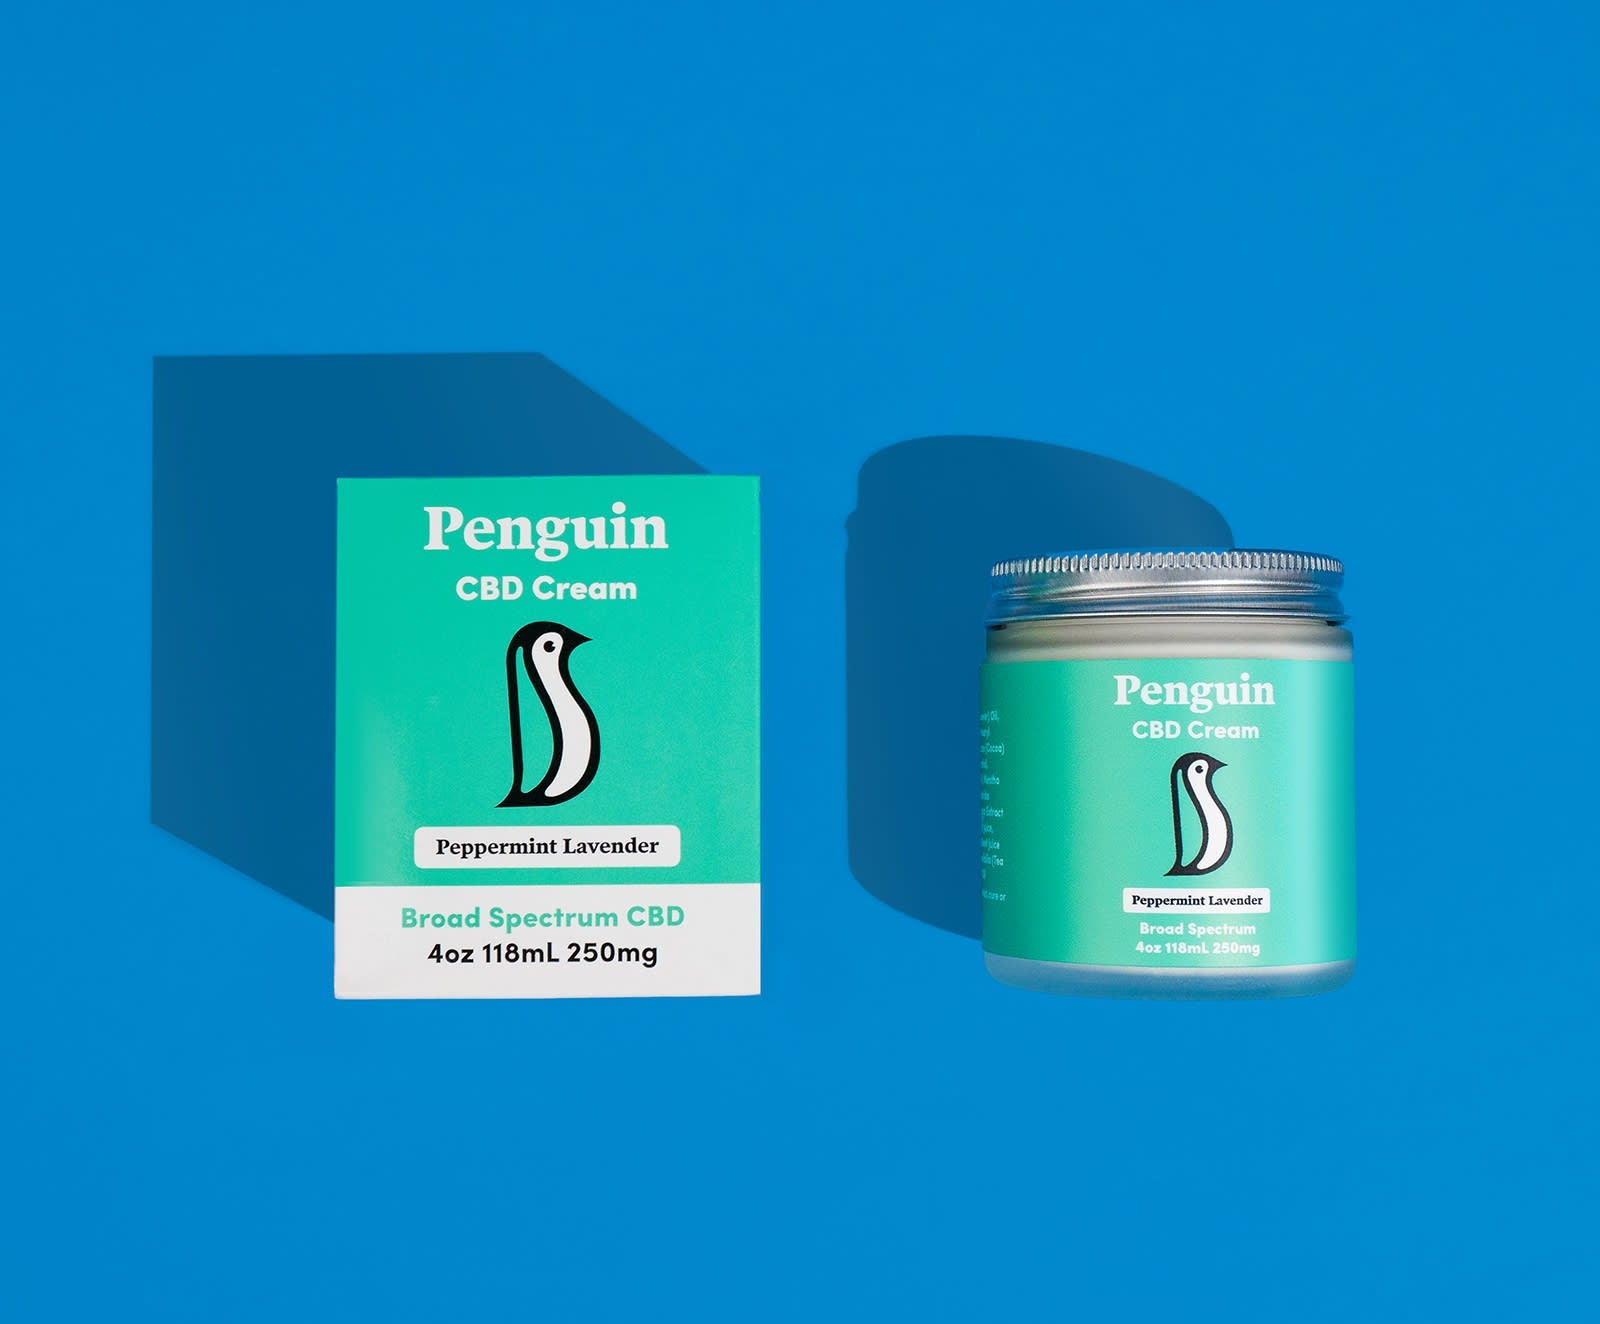 Penguin CBD Cream Best Price